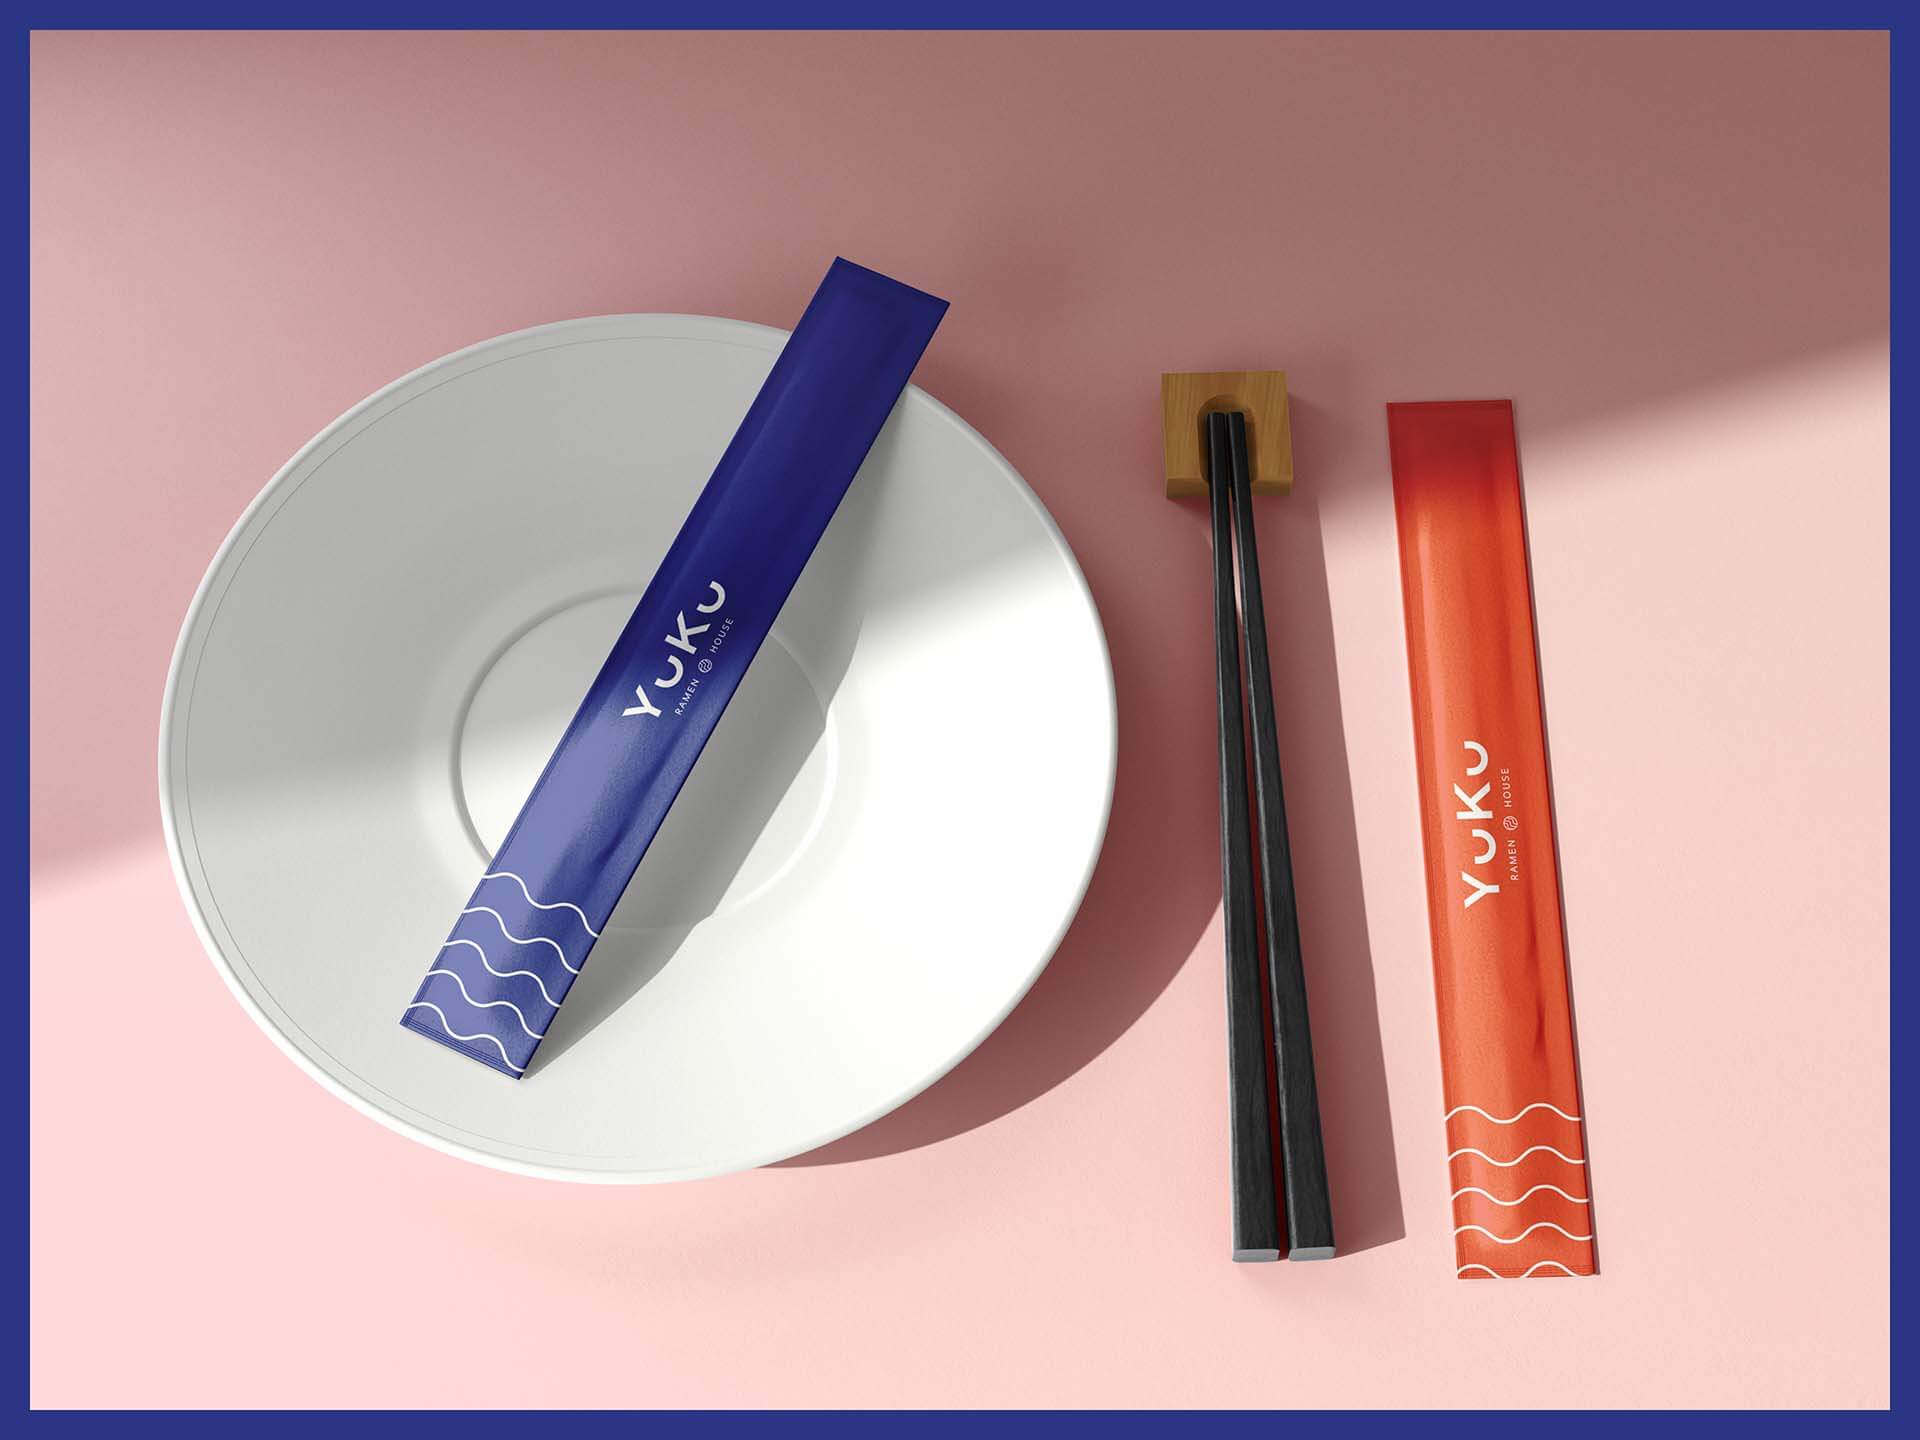 Ramen Resurant Branding Chopstick Design